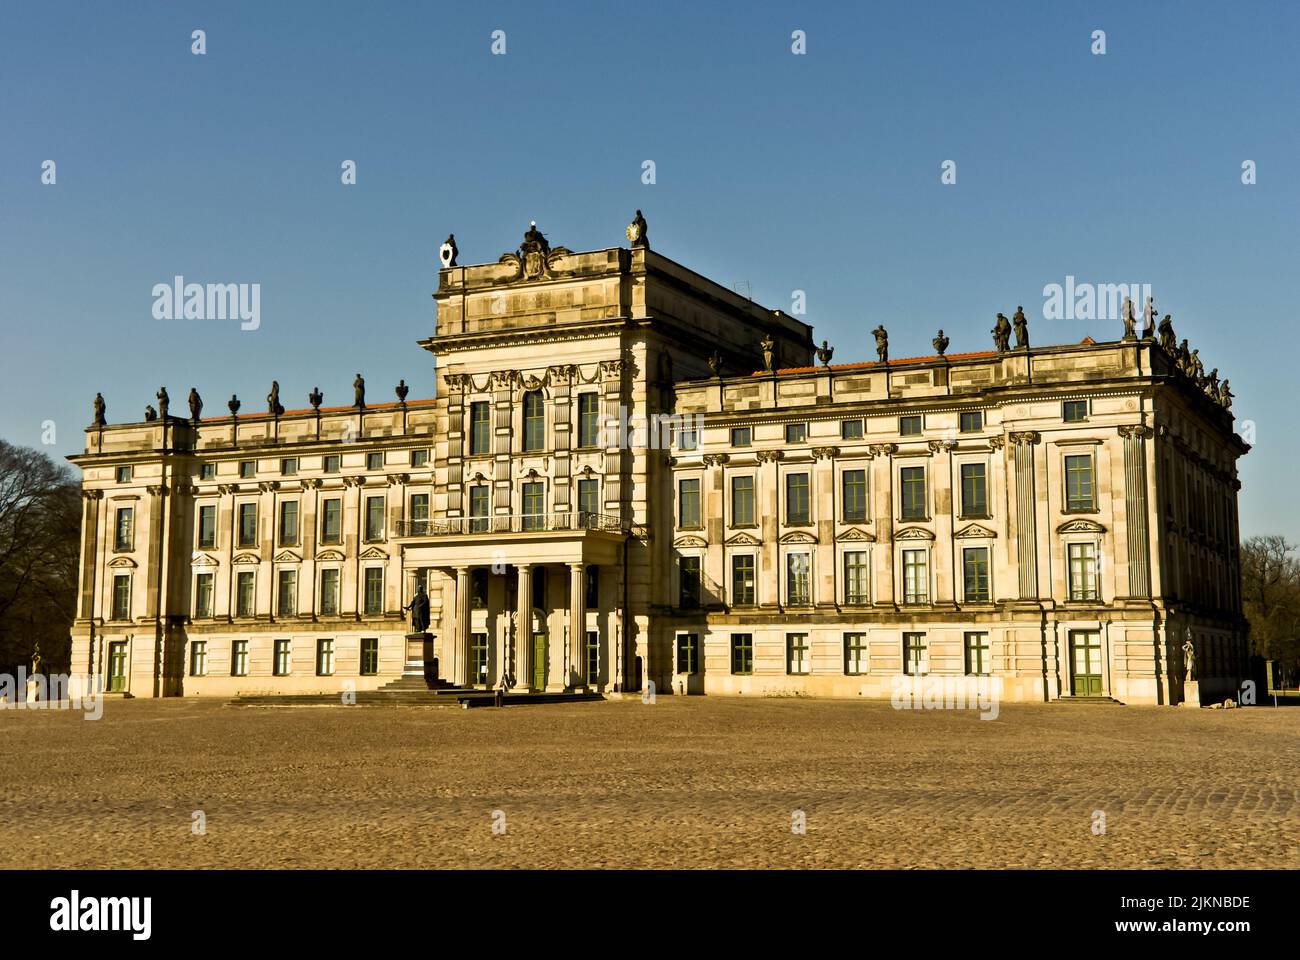 Das Schloss Ludwigslust, ein Herrensitz oder Schloss in der Stadt Ludwigslust, Mecklenburg-Vorpommern, Norddeutschland. Stockfoto